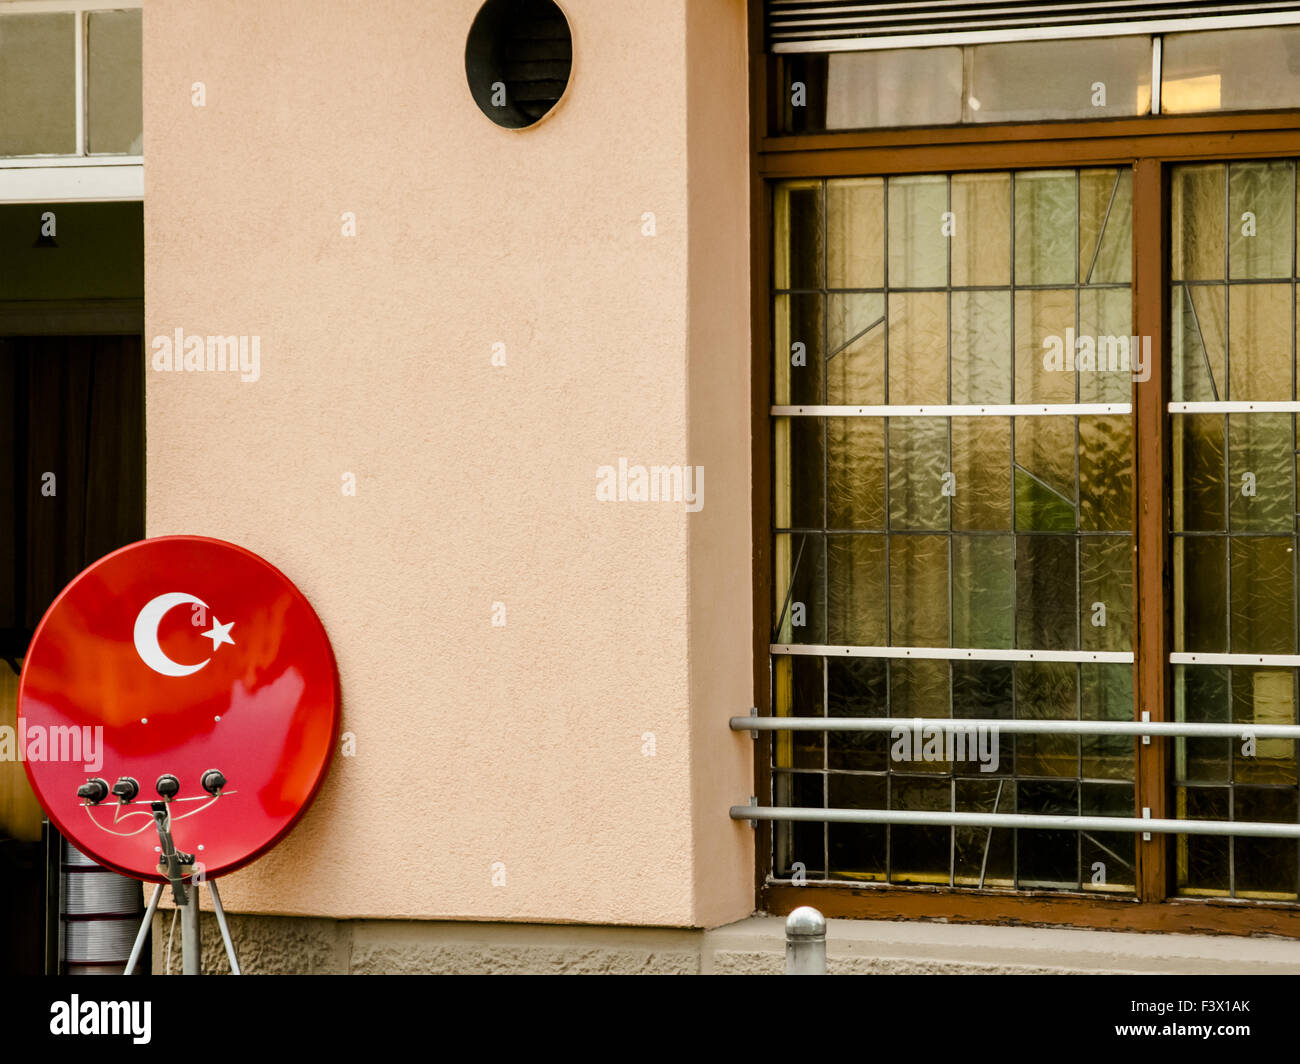 Ricevitore satellitare, bagno turco bandiera nazionale Foto Stock